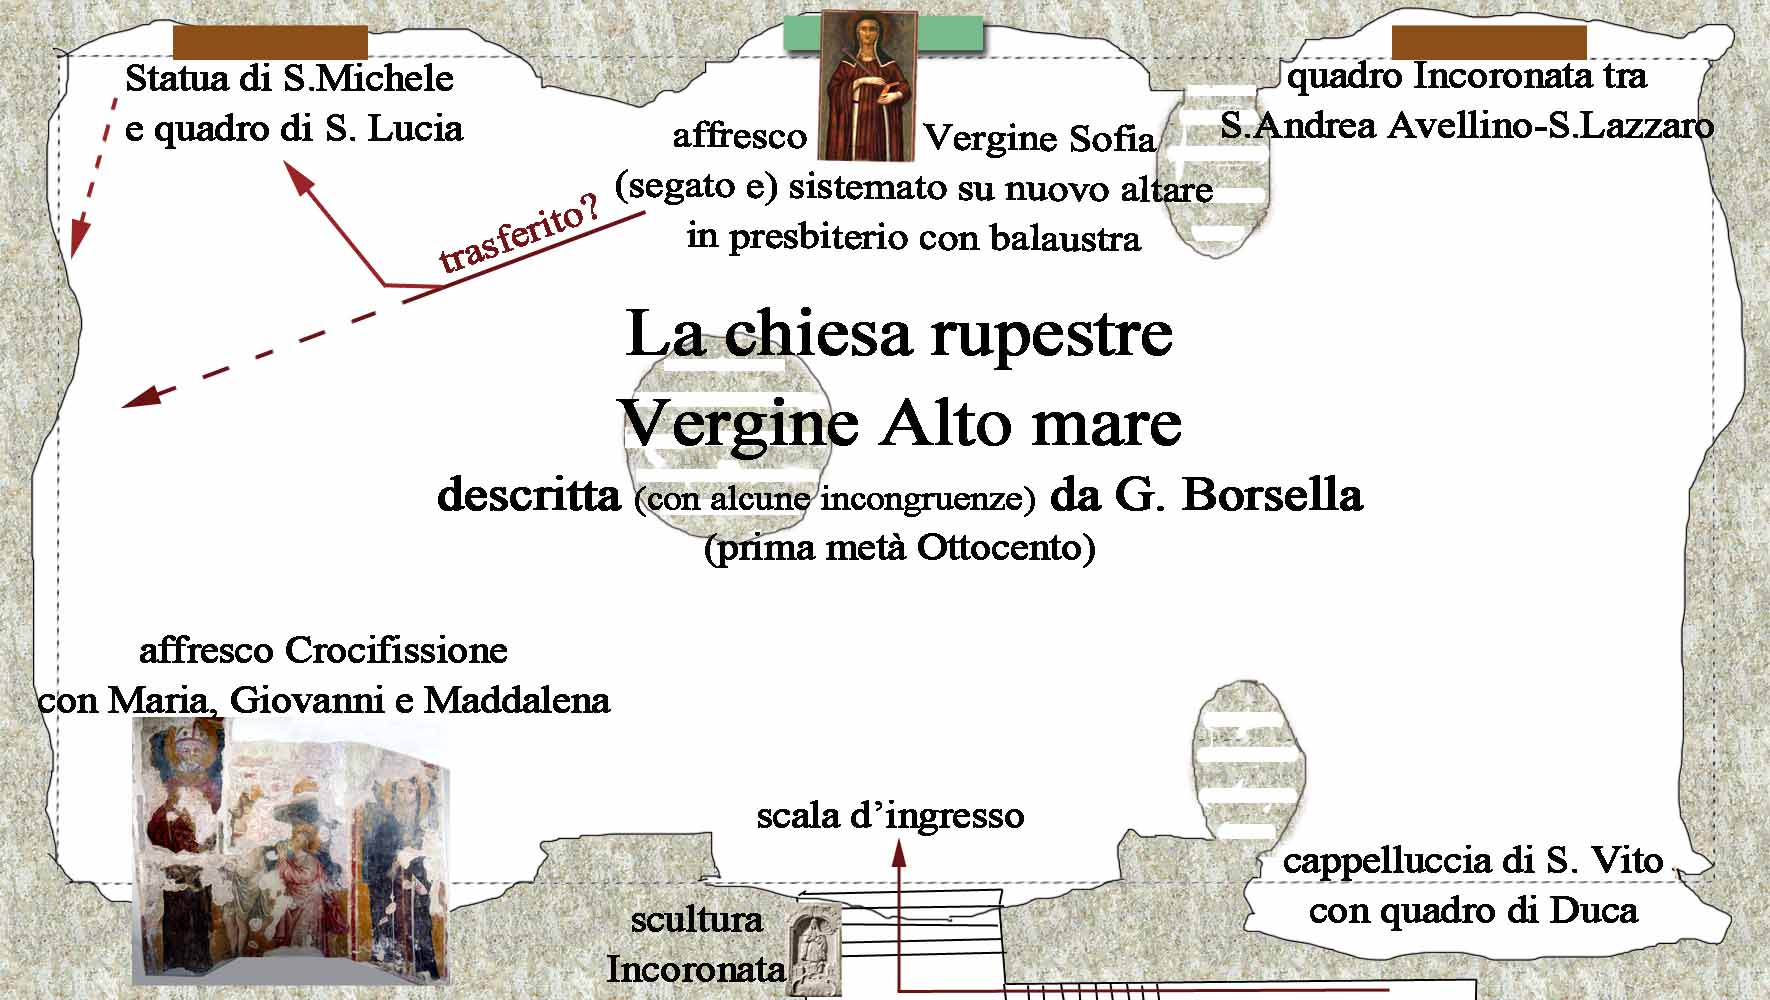 pianta schematica della cripta nella prima met dell' '800, secondo le descrizioni del Borsella